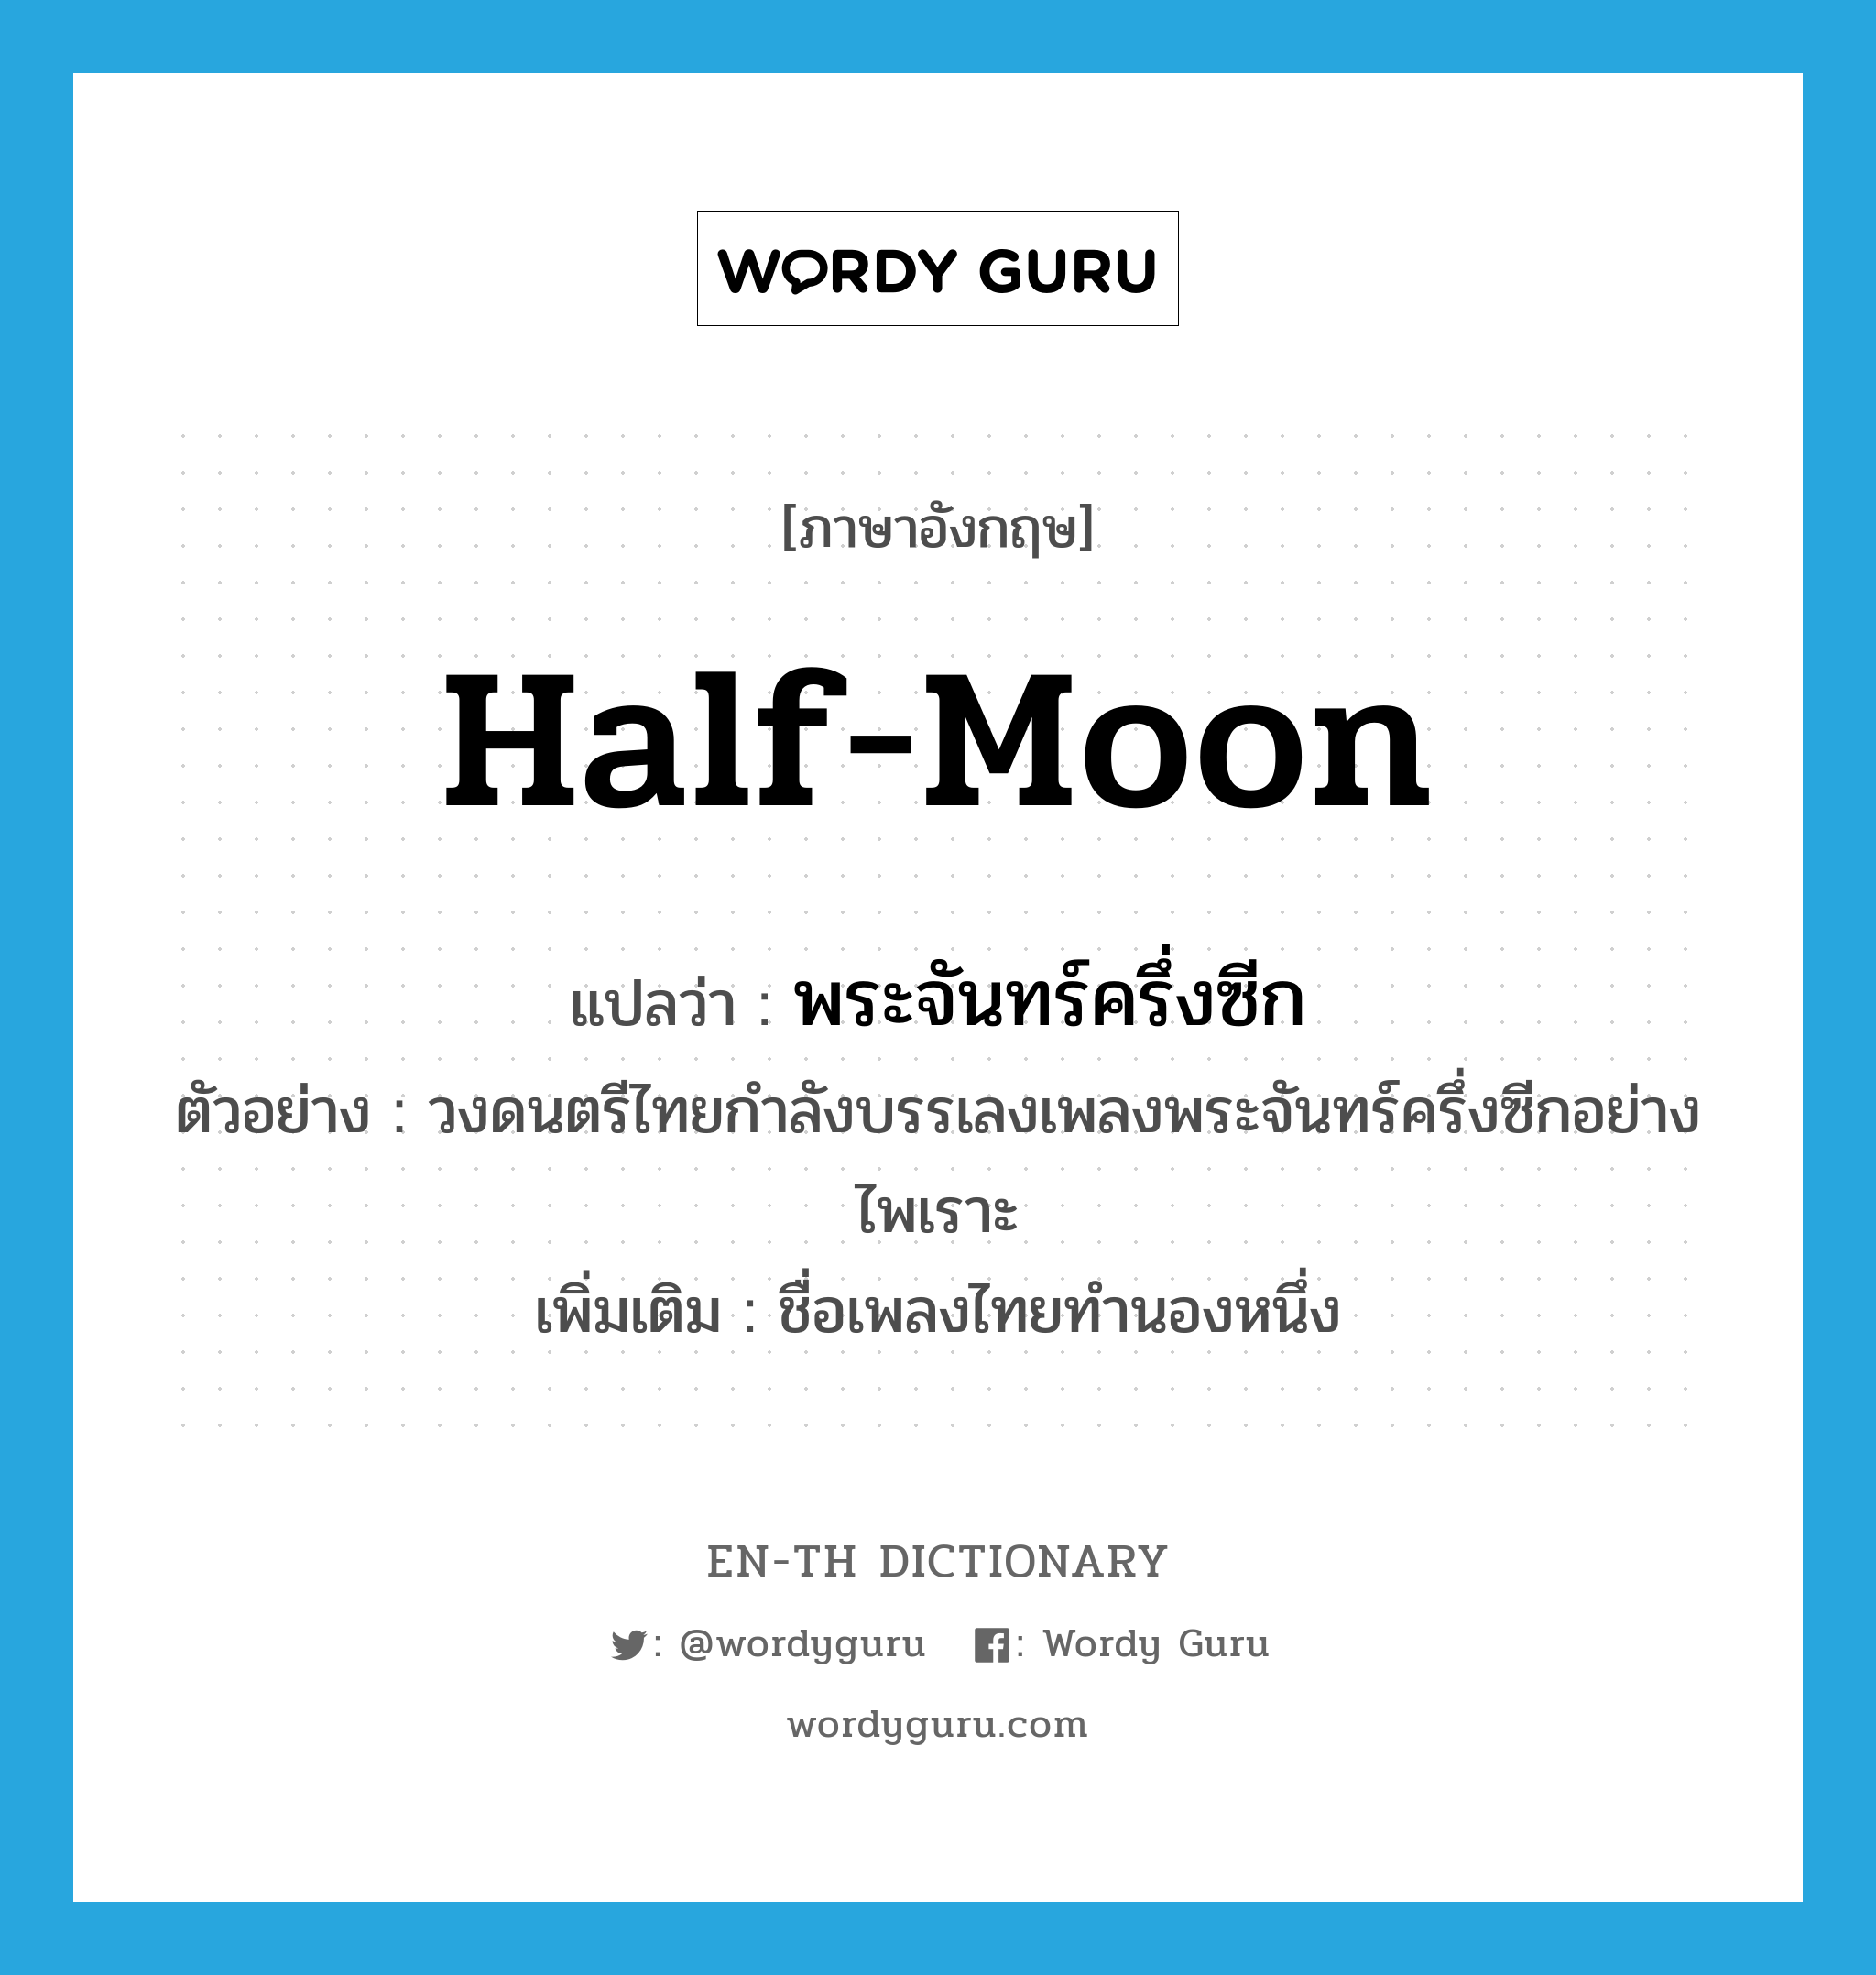 half-moon แปลว่า?, คำศัพท์ภาษาอังกฤษ half-moon แปลว่า พระจันทร์ครึ่งซีก ประเภท N ตัวอย่าง วงดนตรีไทยกำลังบรรเลงเพลงพระจันทร์ครึ่งซีกอย่างไพเราะ เพิ่มเติม ชื่อเพลงไทยทำนองหนึ่ง หมวด N